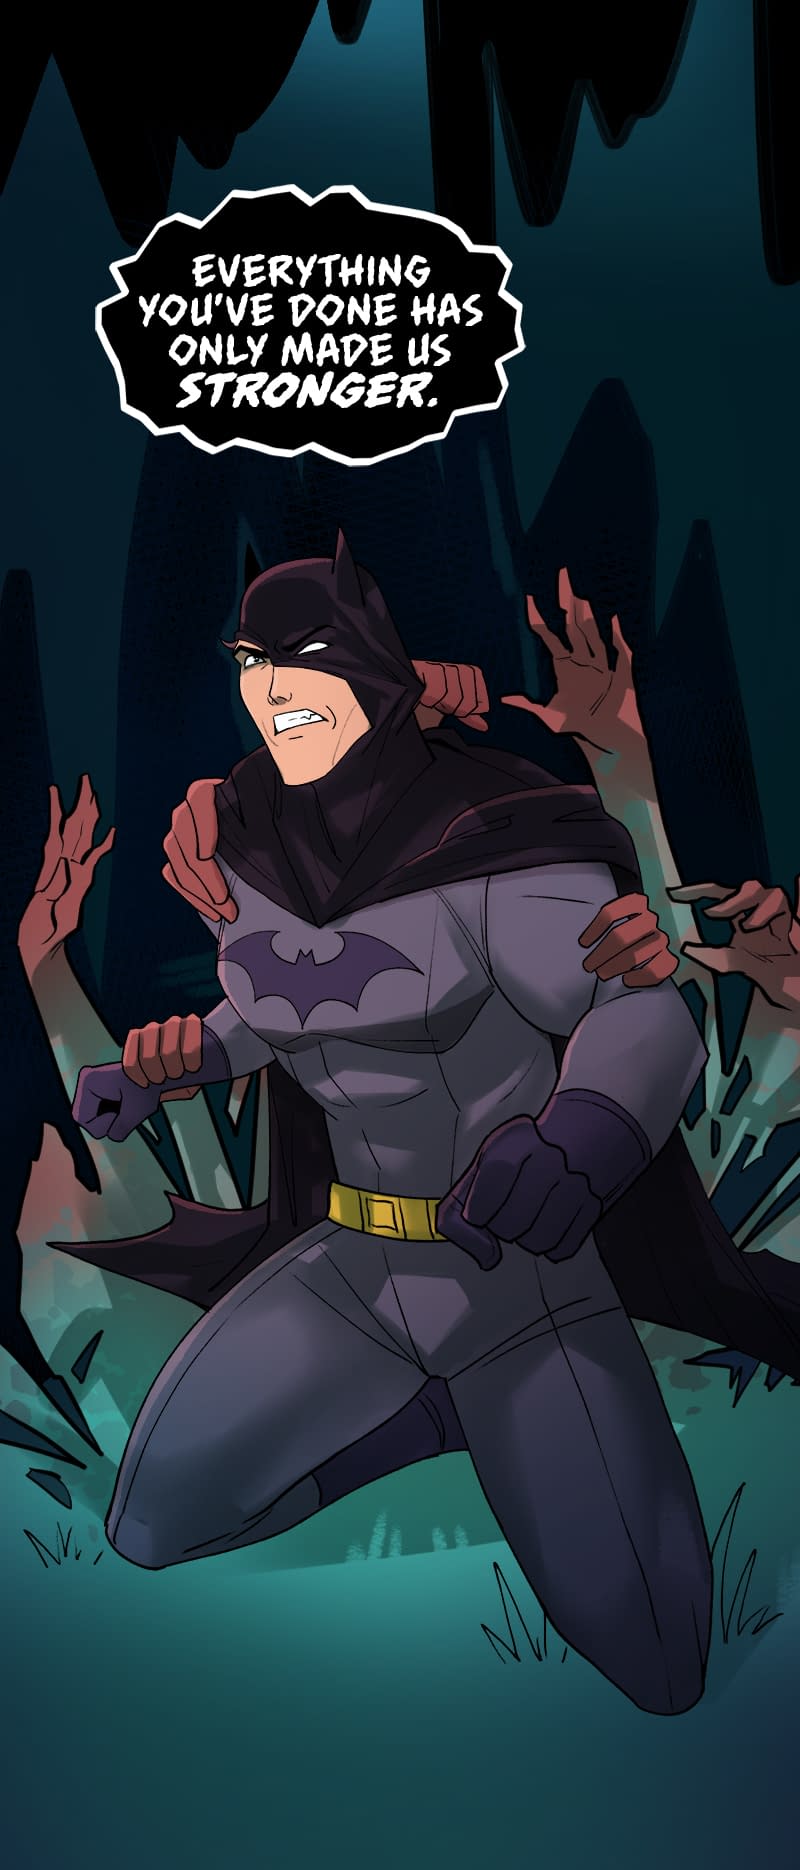 Wayne family adventures. 23 Февраля Бэтмен. Batman: Wayne Family Adventures Кассандра. 23 Февраля Бэтмен коллега. Открытка с Бэтманом на 23.